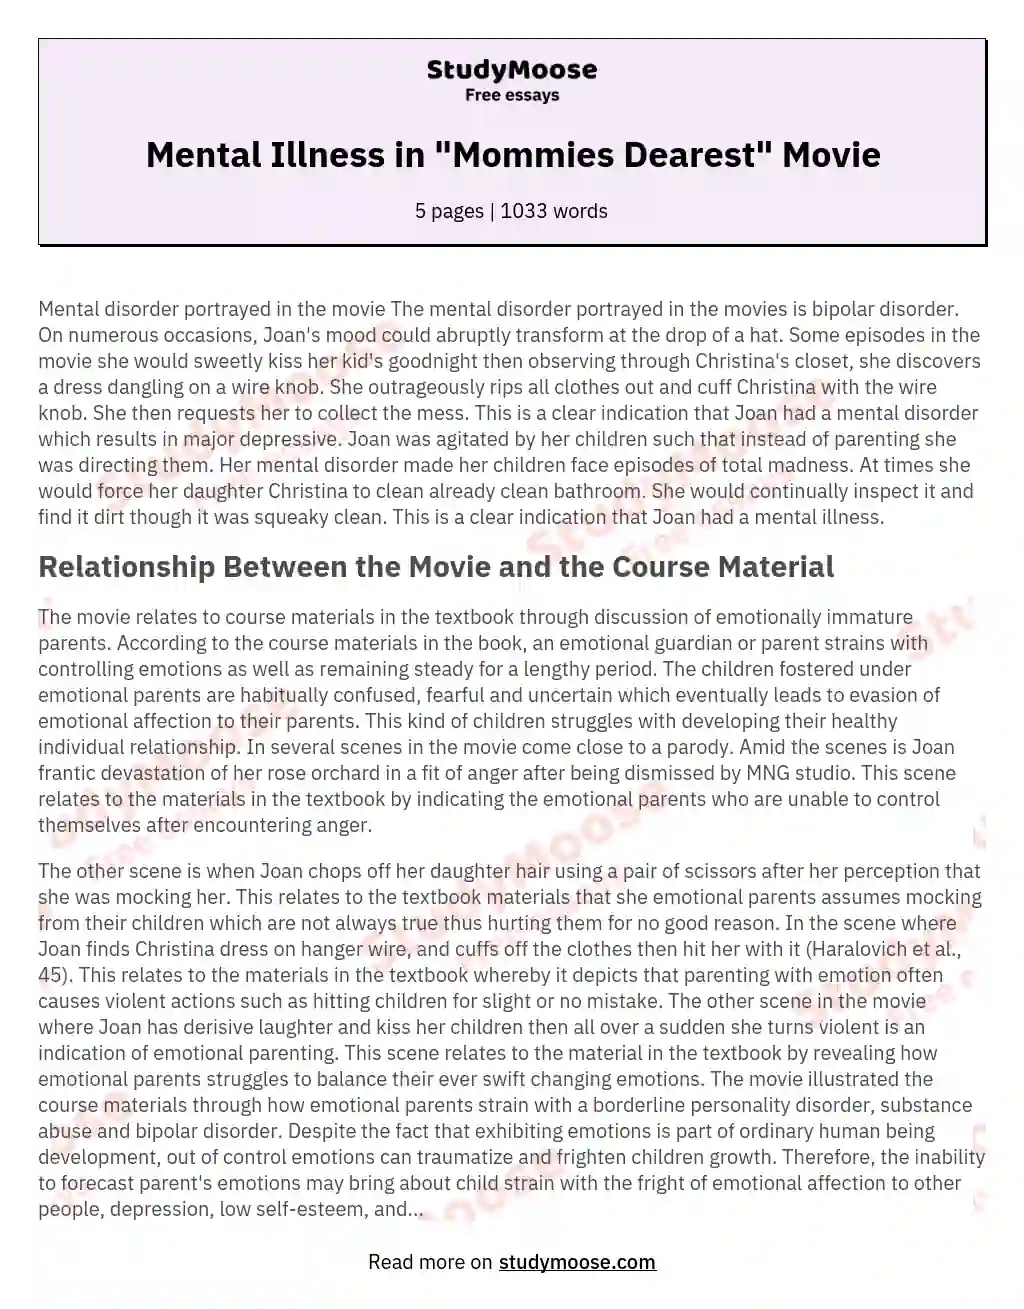 Mental Illness in "Mommies Dearest" Movie essay